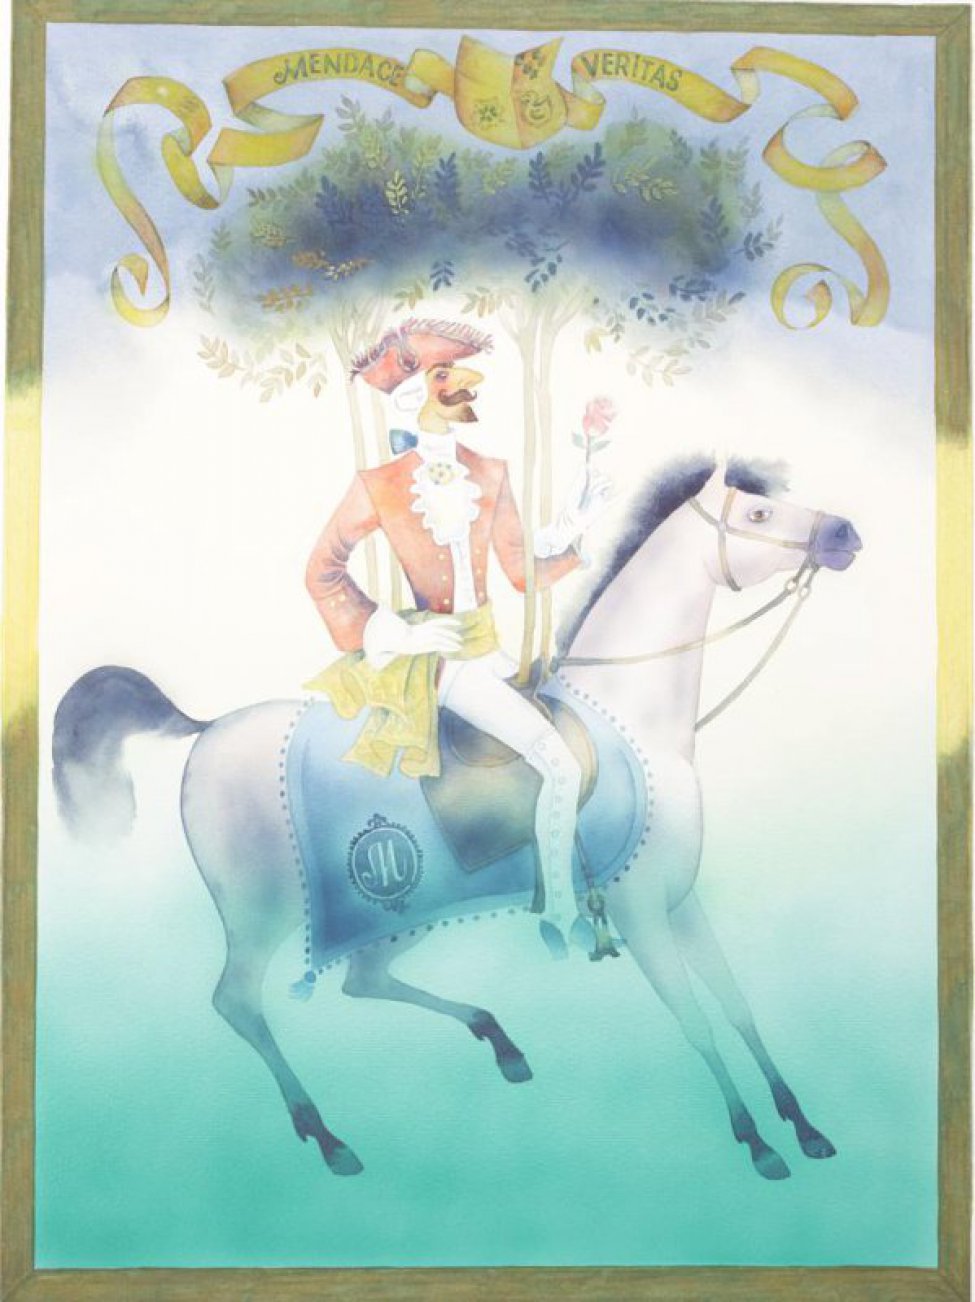 Стилизованное изображение всадника в красной щляпе-треуголке, в белом парике с синим бантом; в красном камзоле с желтым шарфом, белых перчатках, белых лосинах и сапогах на высоком каблуке, с красной розой в руке, сидящего на светло-серой лошади; из седла растут деревья с пышными зелеными кронами. над изображением - герб и лента, на ленте надпись:MENDACE VERITAS.